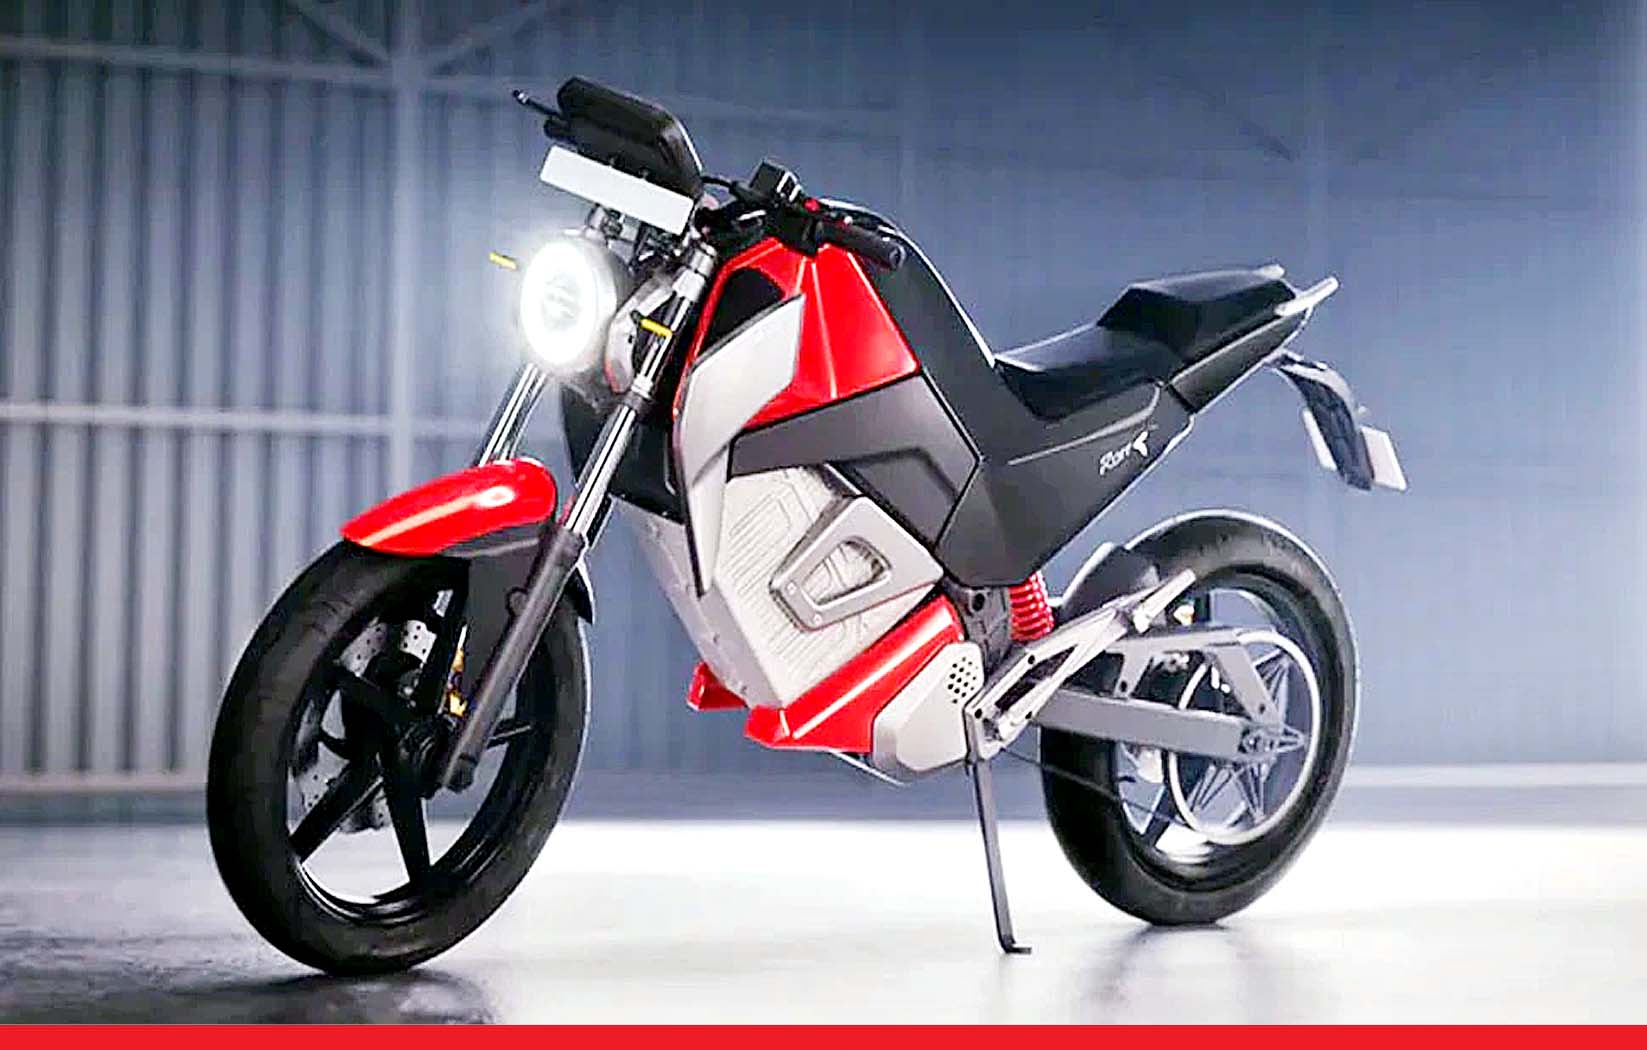 शुरू हुई इलेक्ट्रिक बाइक रिवॉल्ट RV400 की बुकिंग, कीमत 1.25 लाख रुपये से शुरू